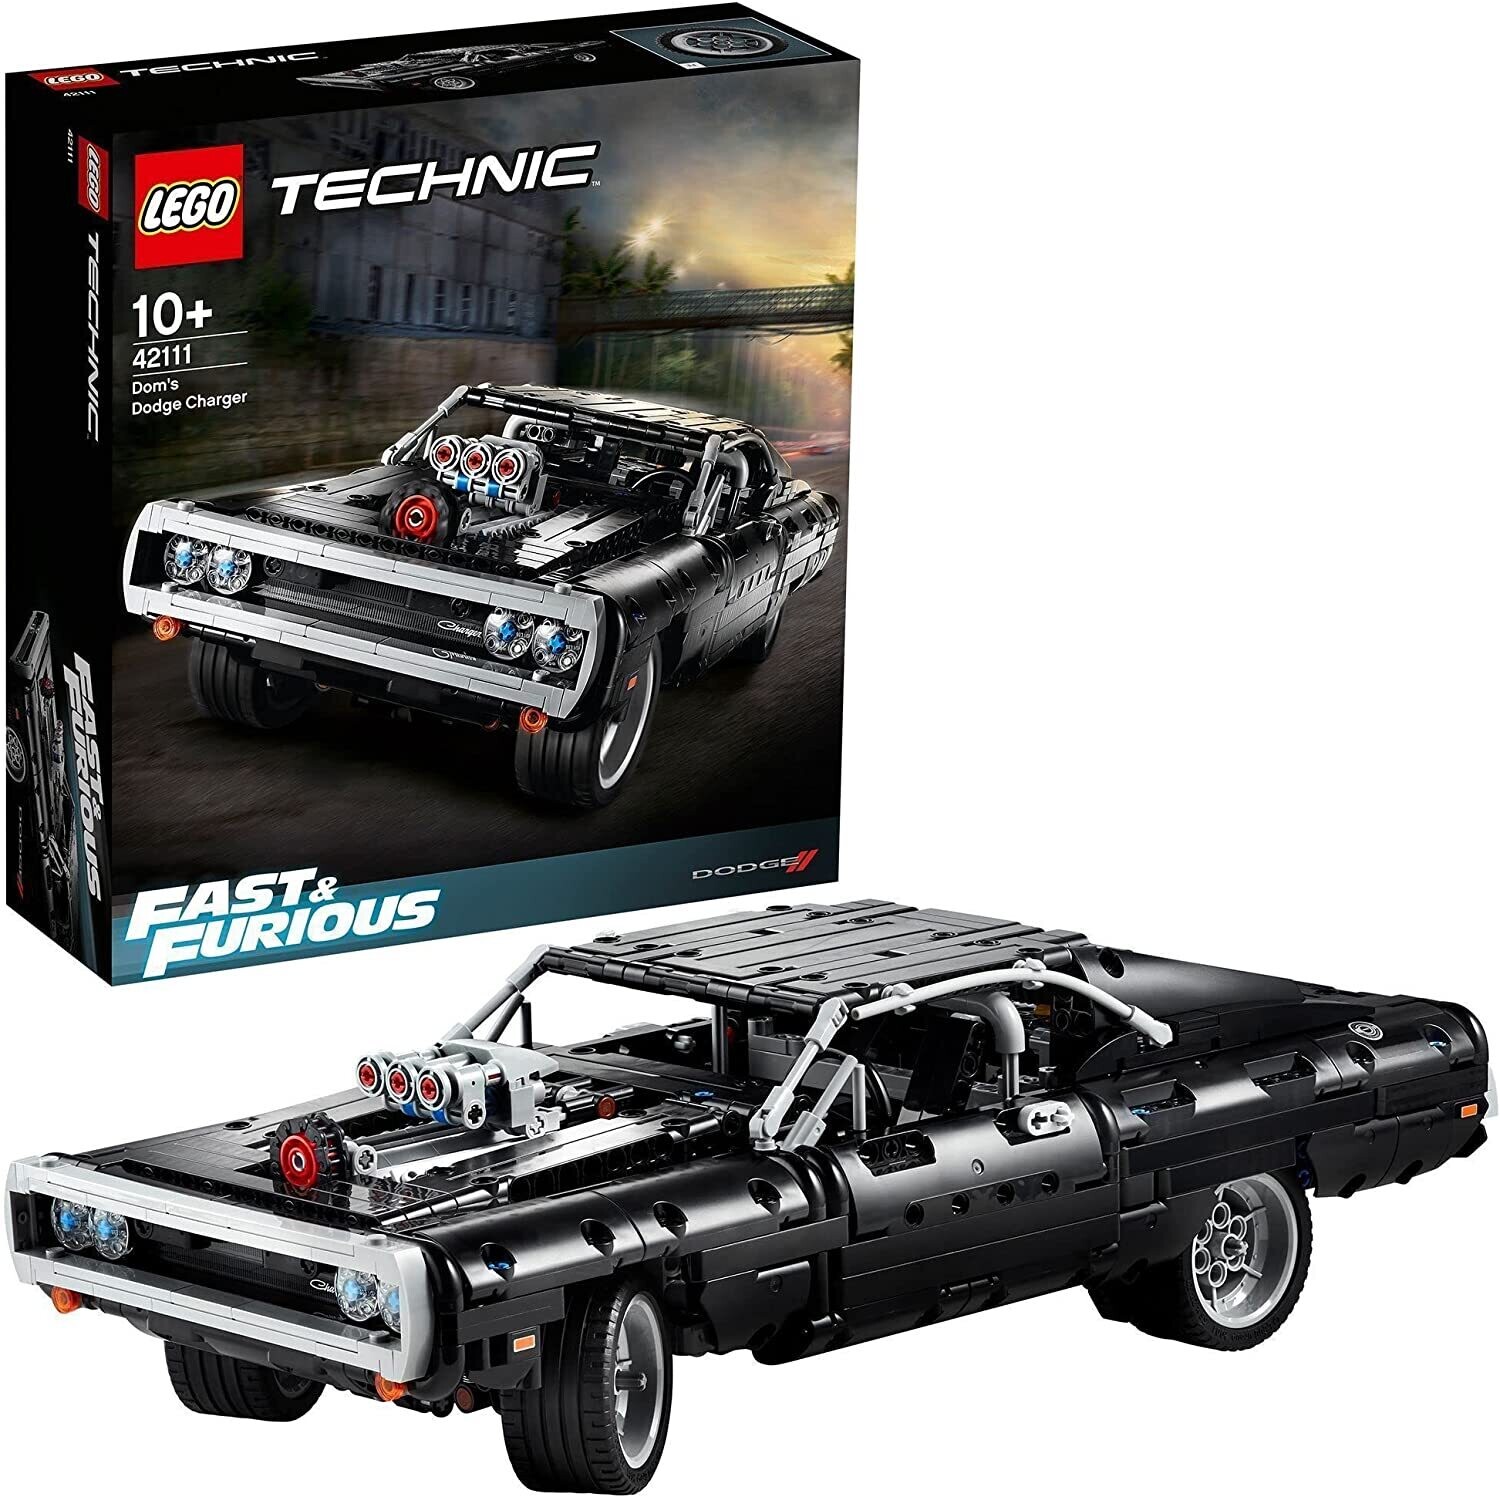 LEGO Technic Dom's Dodge Charger, Modellini Macchine da Corsa Fast